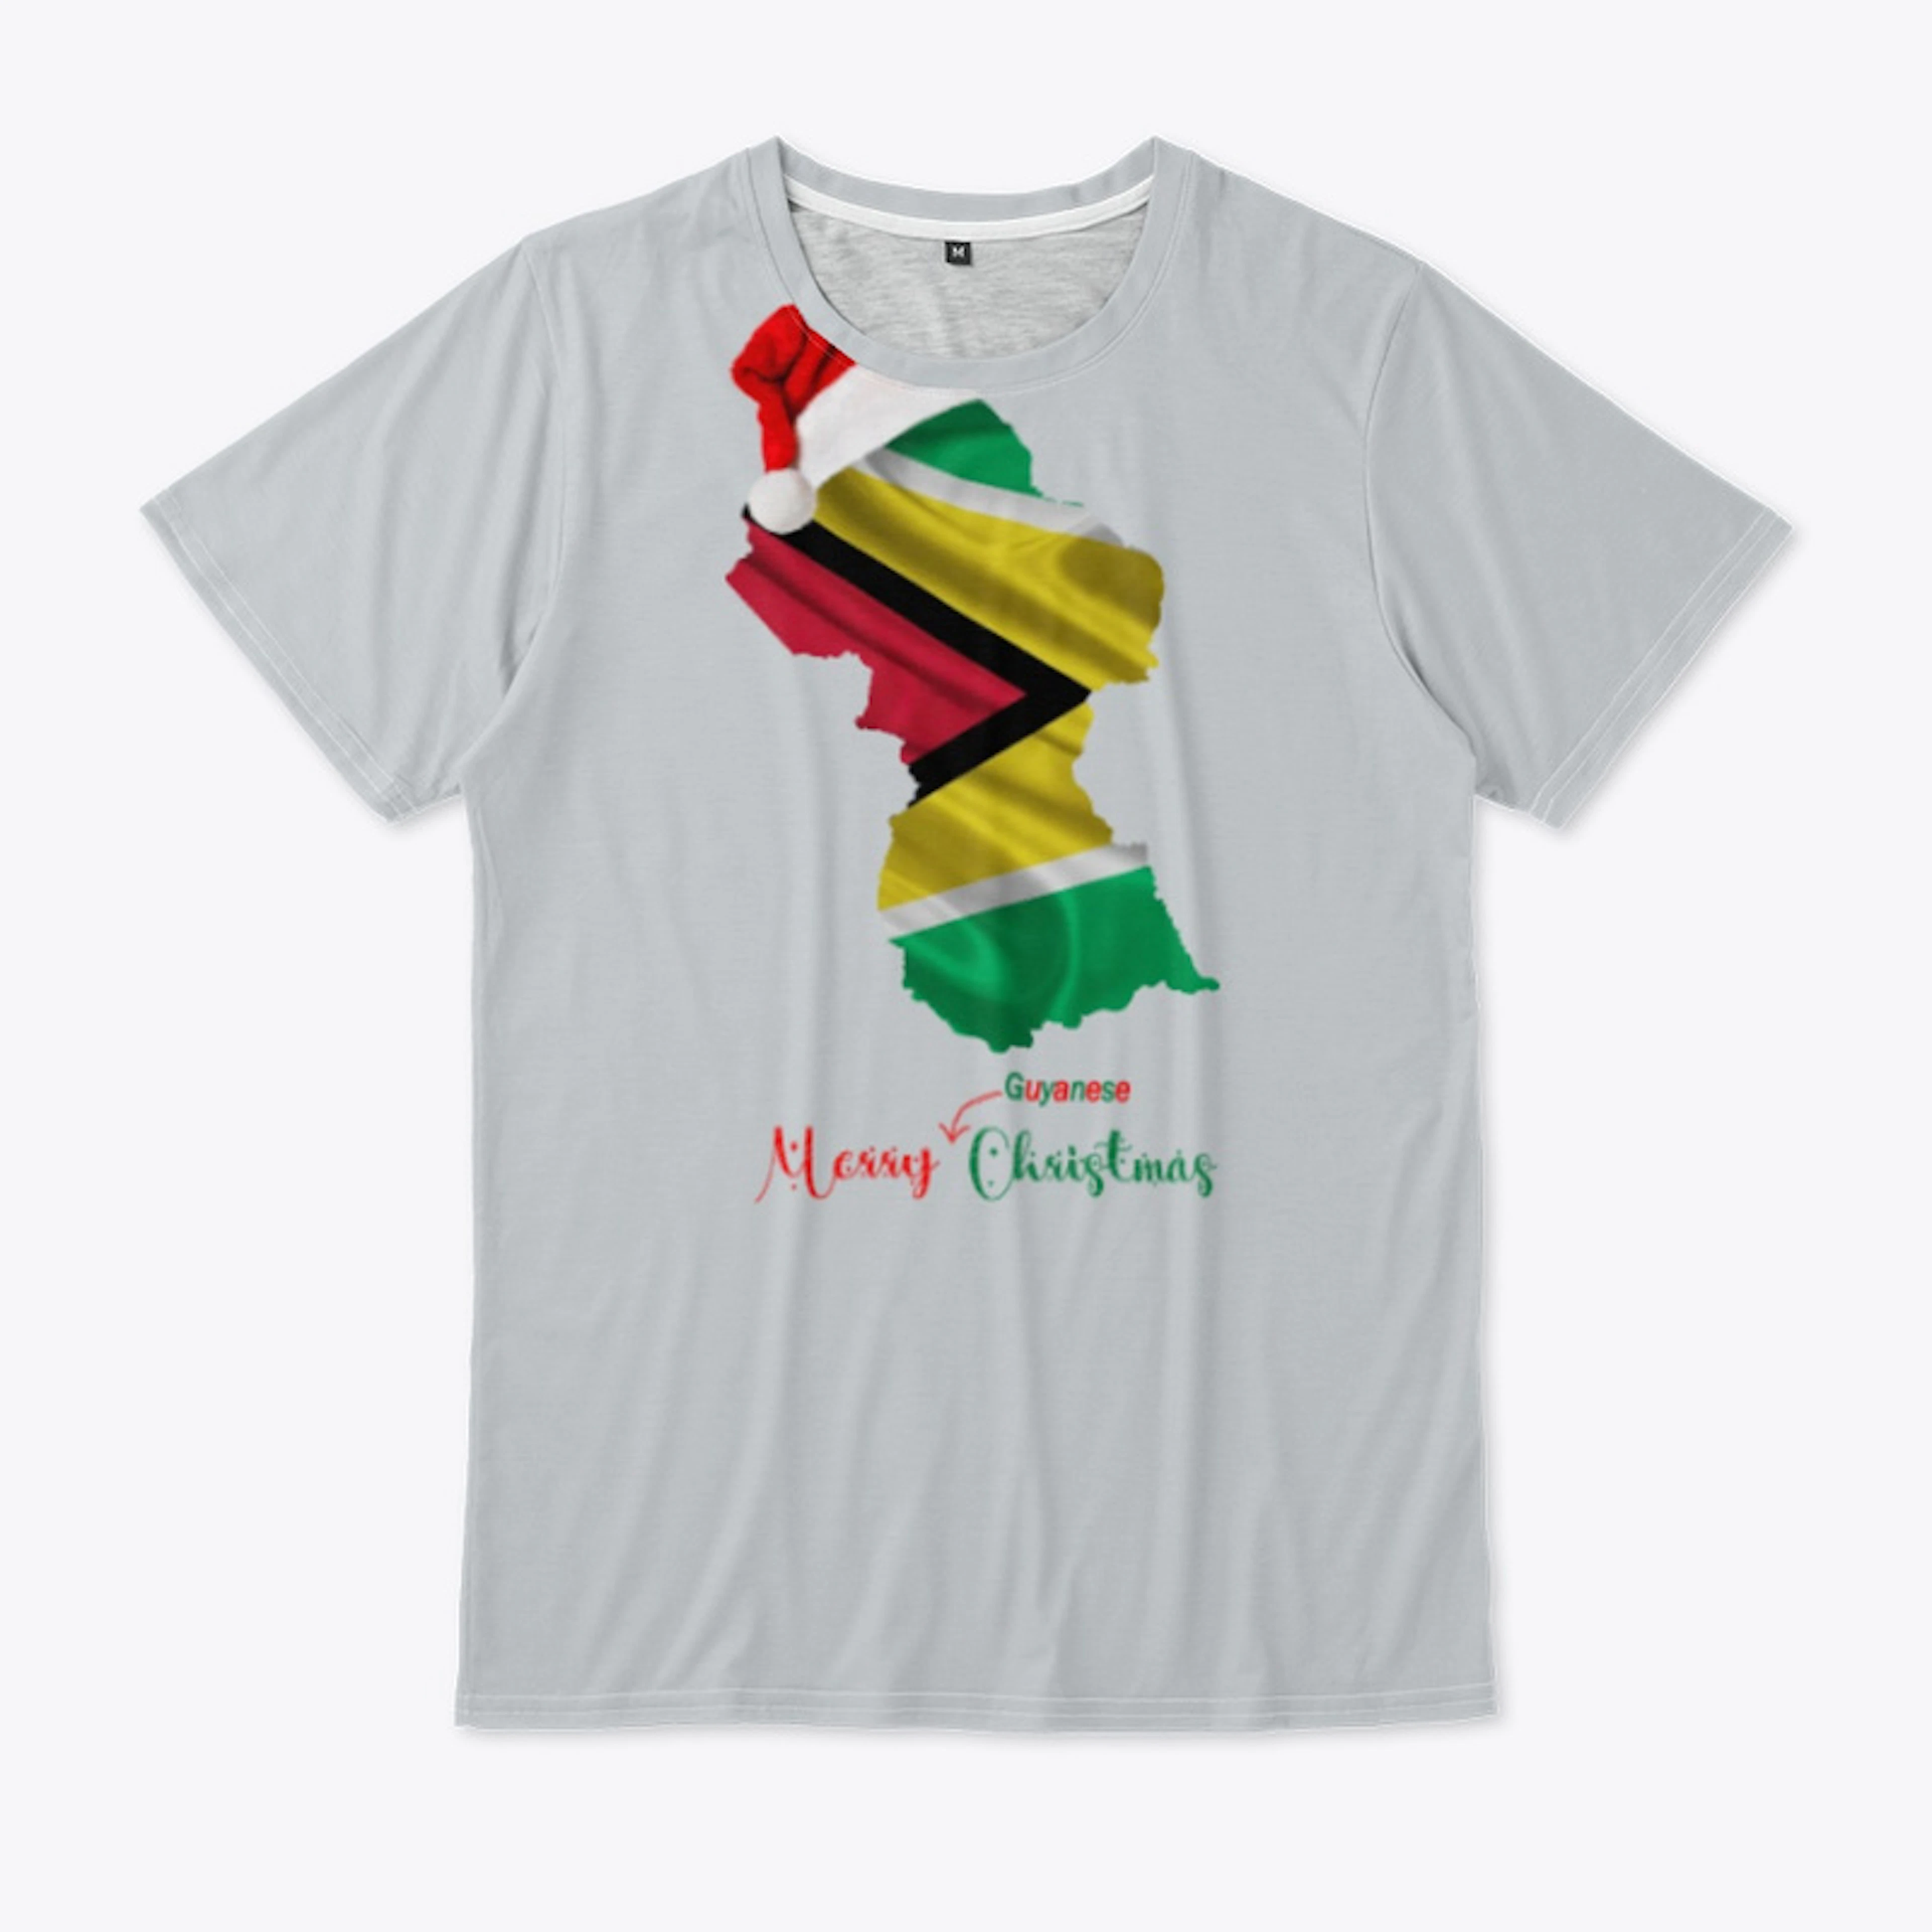 Merry Guyanese Christmas